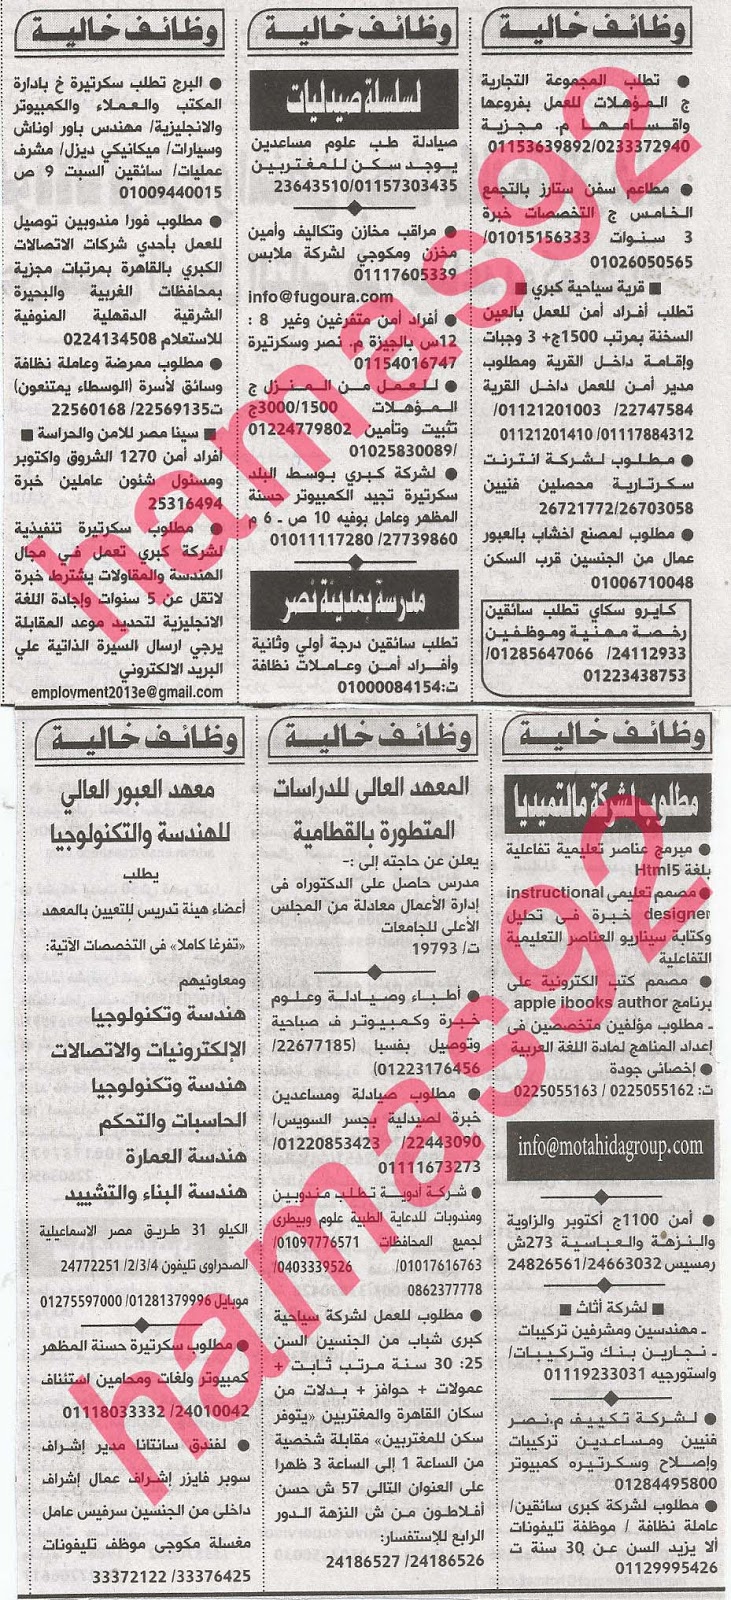 وظائف خالية فى جريدة الاهرام الجمعة 16-08-2013 4